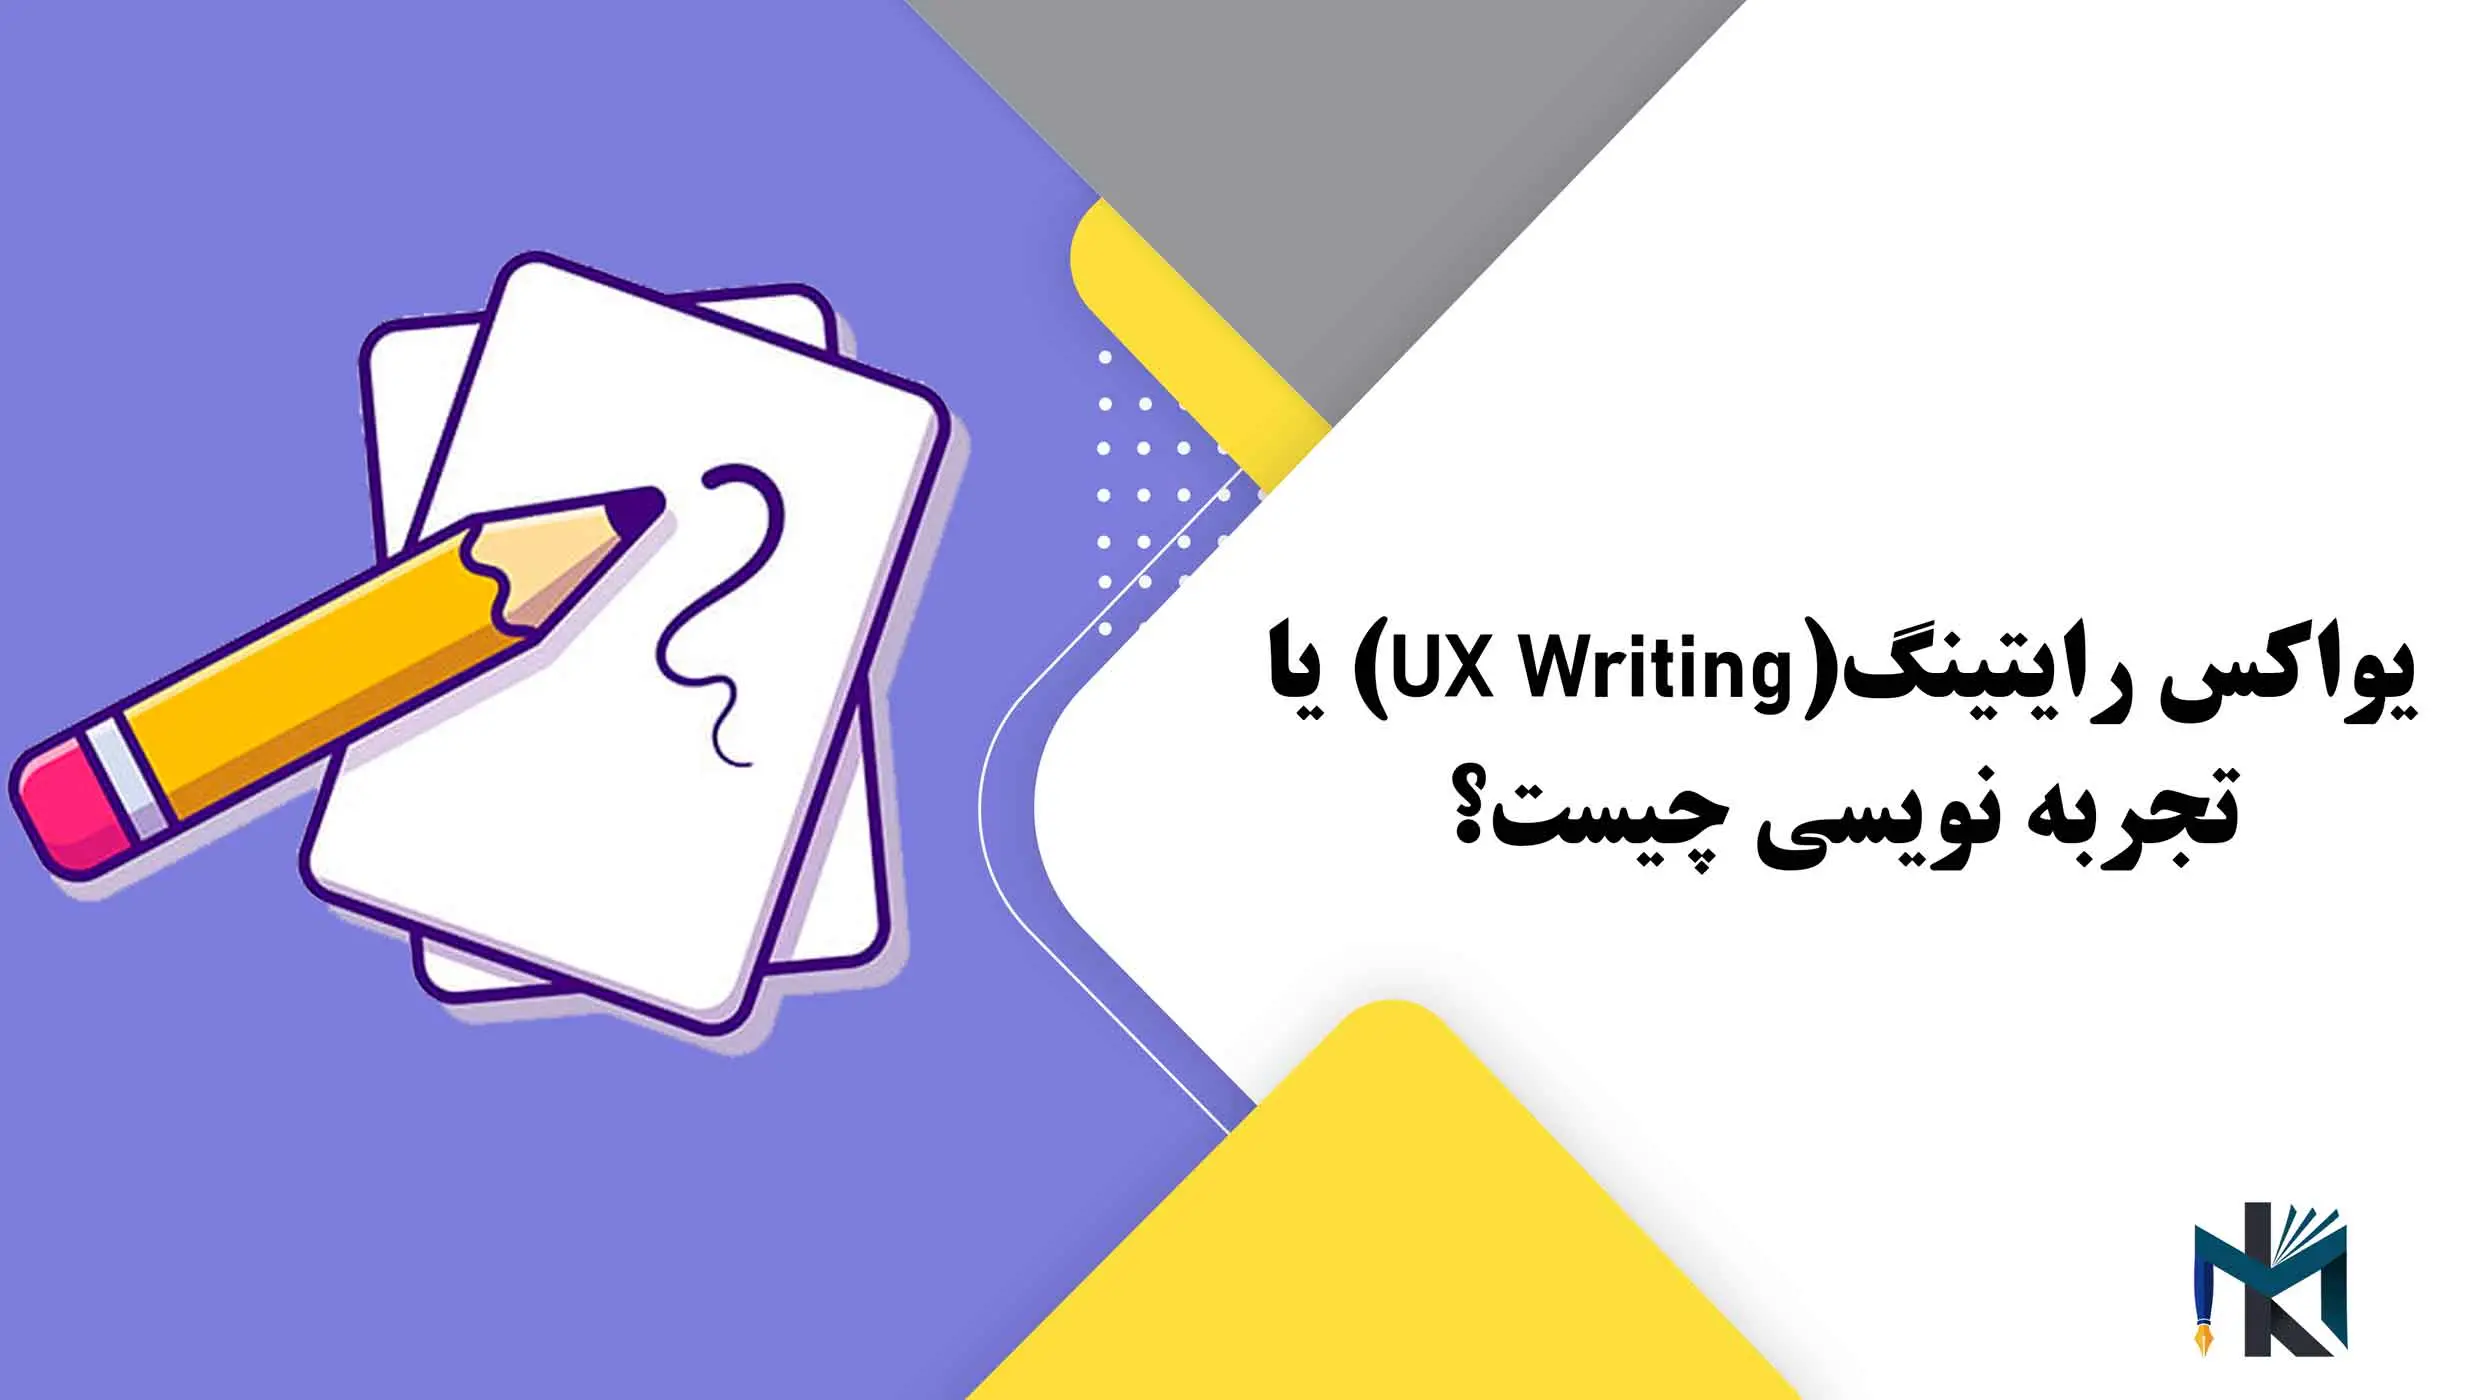 یواکس رایتینگ(UX Writing) یا تجربه نویسی چیست؟